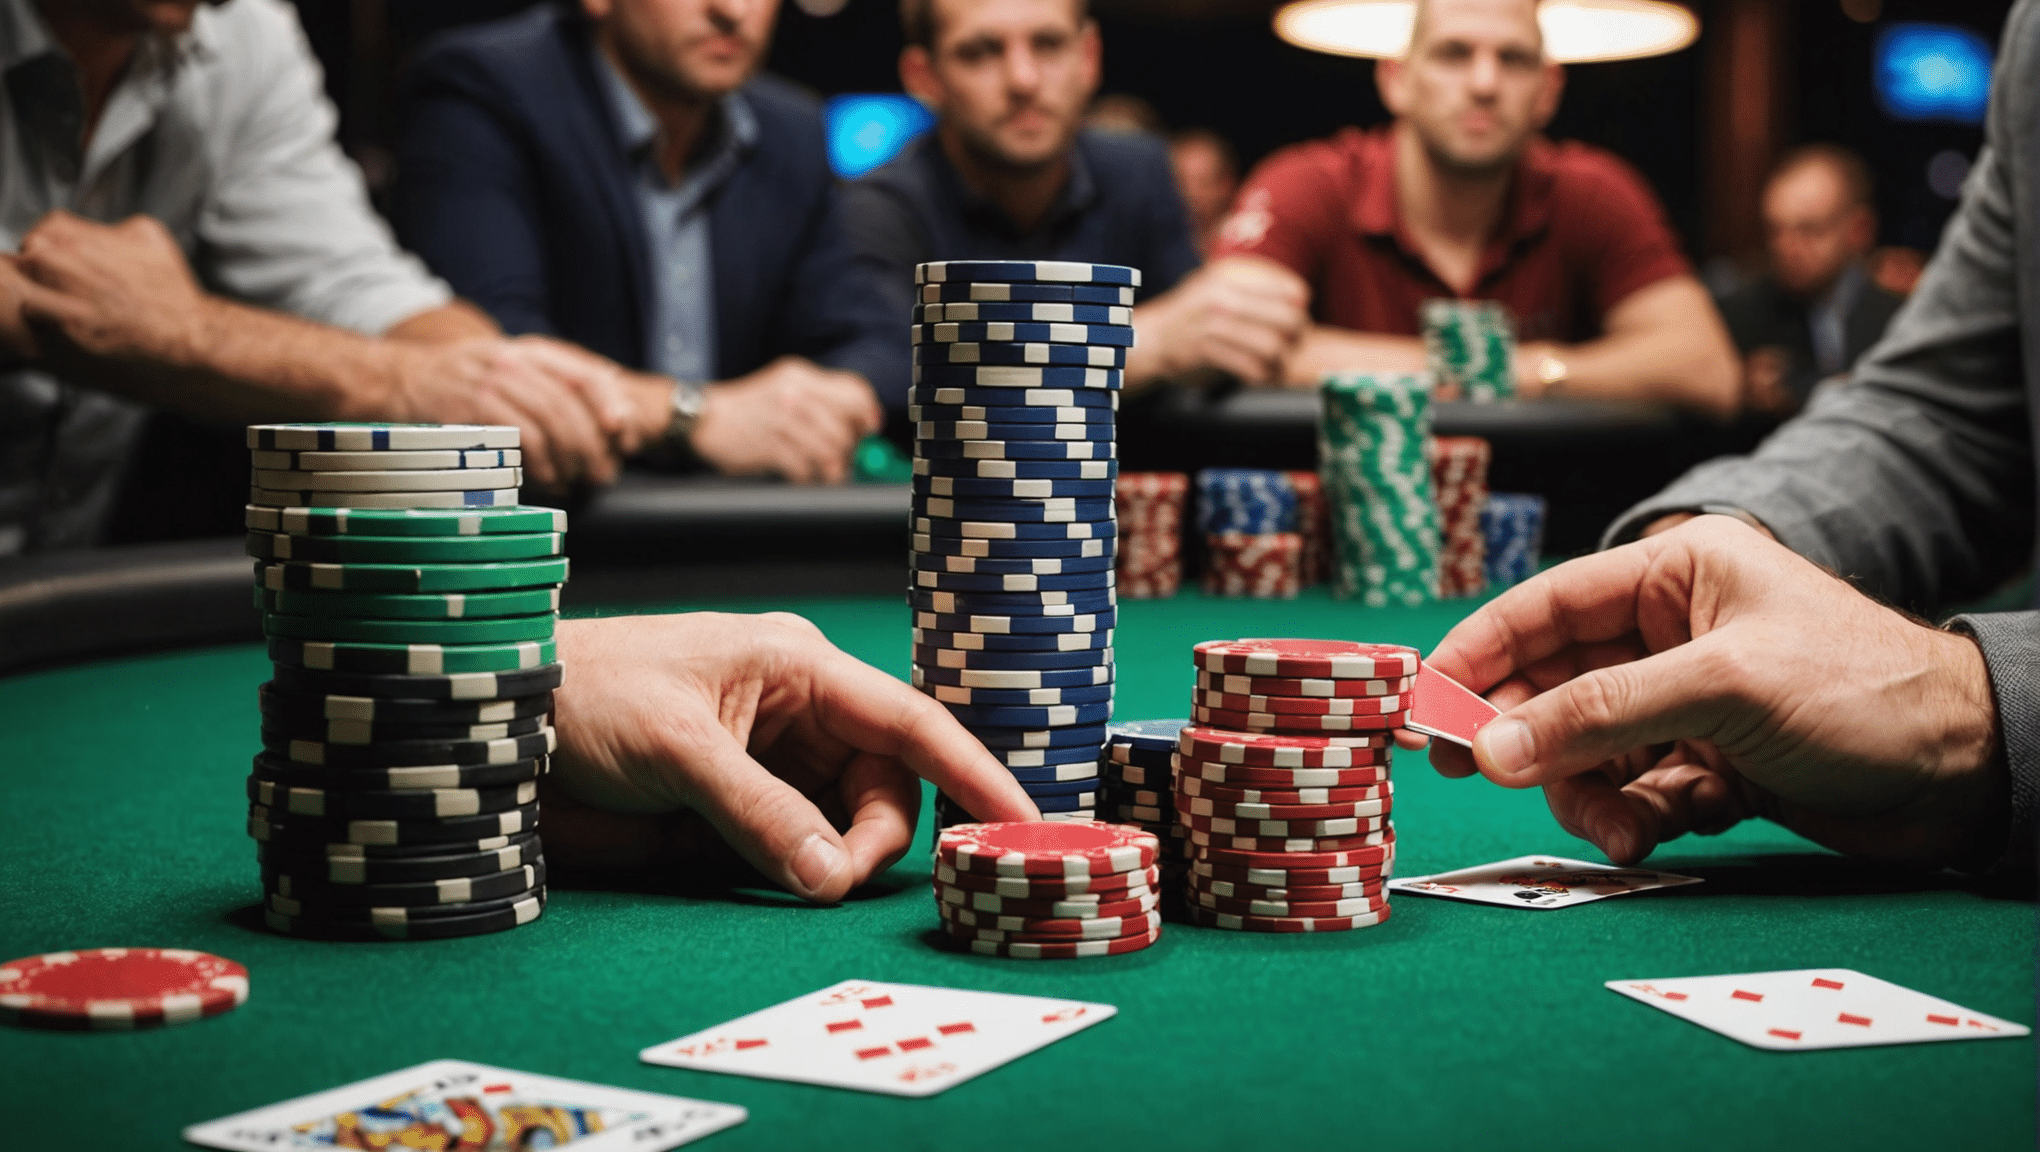 découvrez les différences entre le poker en ligne et le poker en live : règles, stratégies et particularités dans cet article informatif. améliorez vos compétences de joueur de poker avec nos comparaisons détaillées.